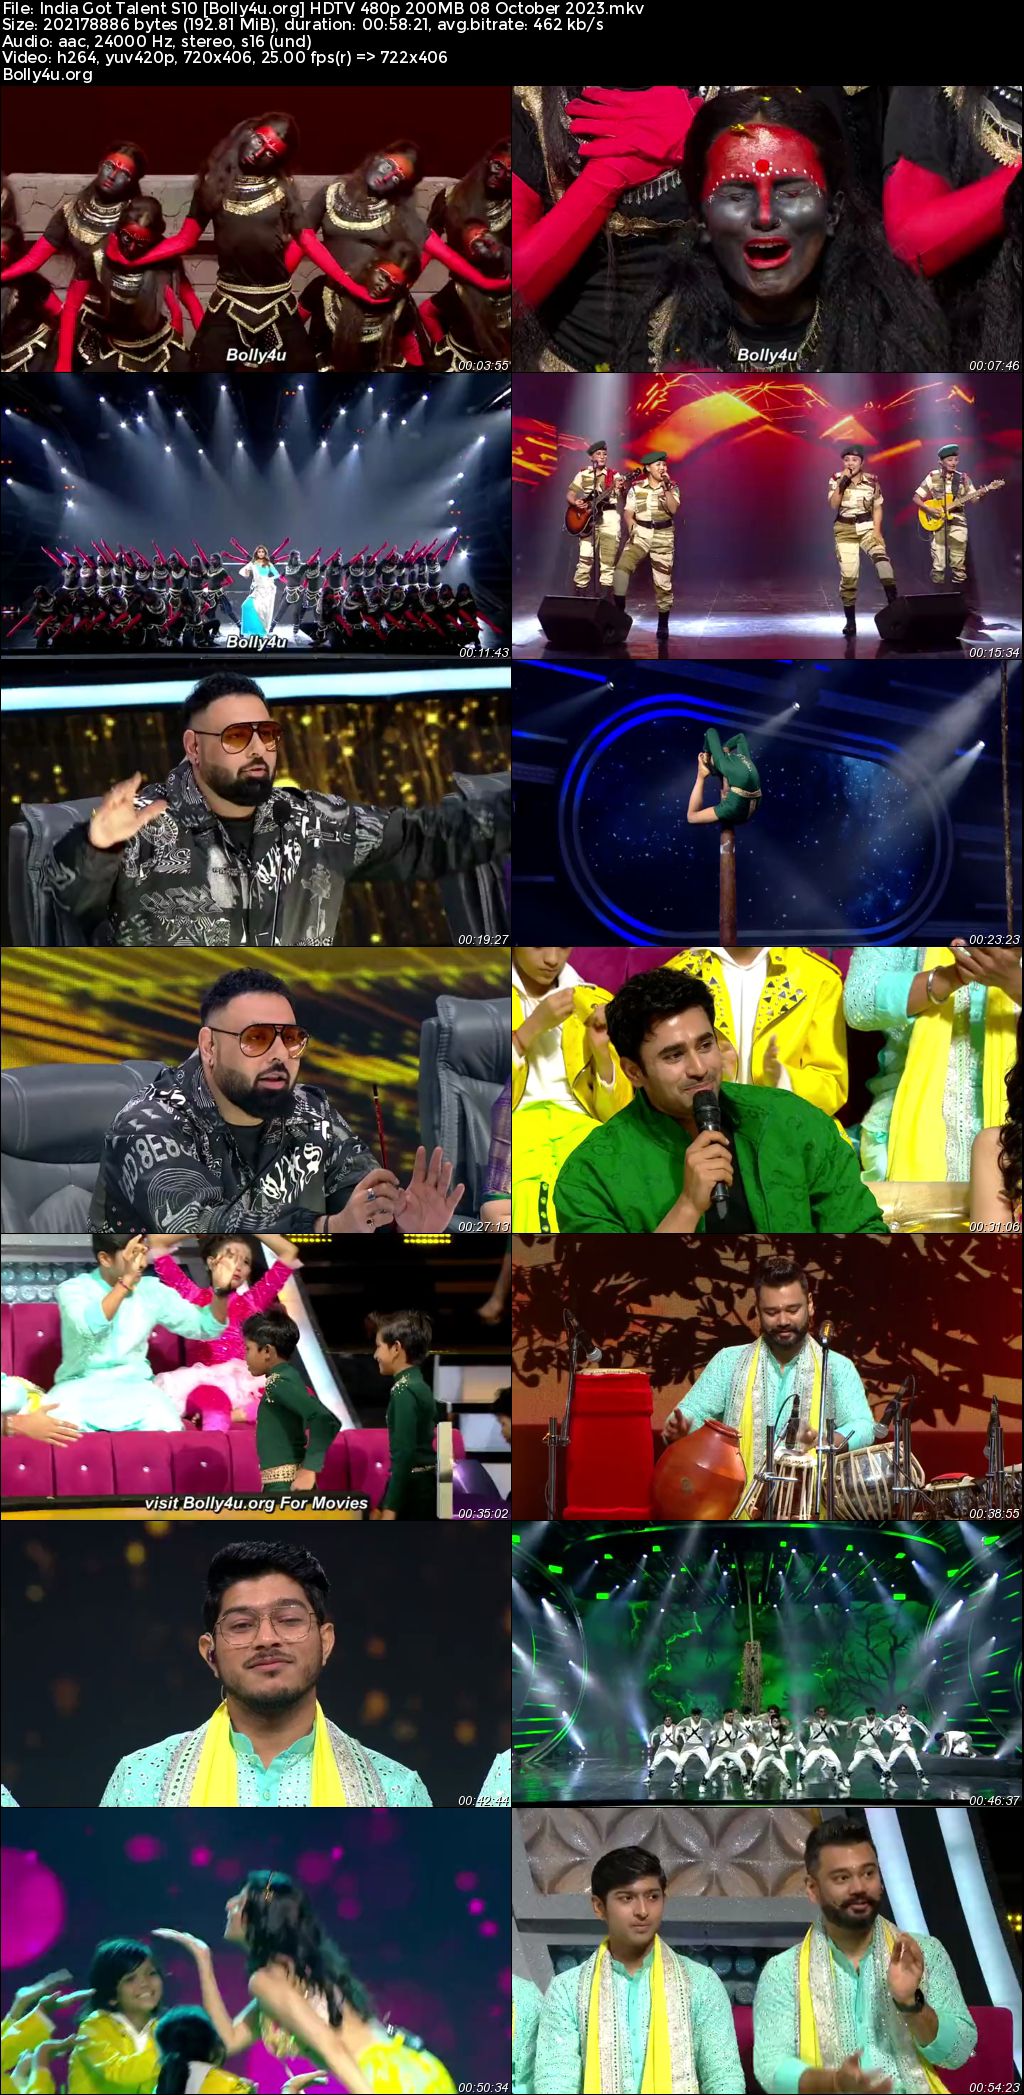  India Got Talent S10 HDTV 480p 200MB 08 October 2023 Download